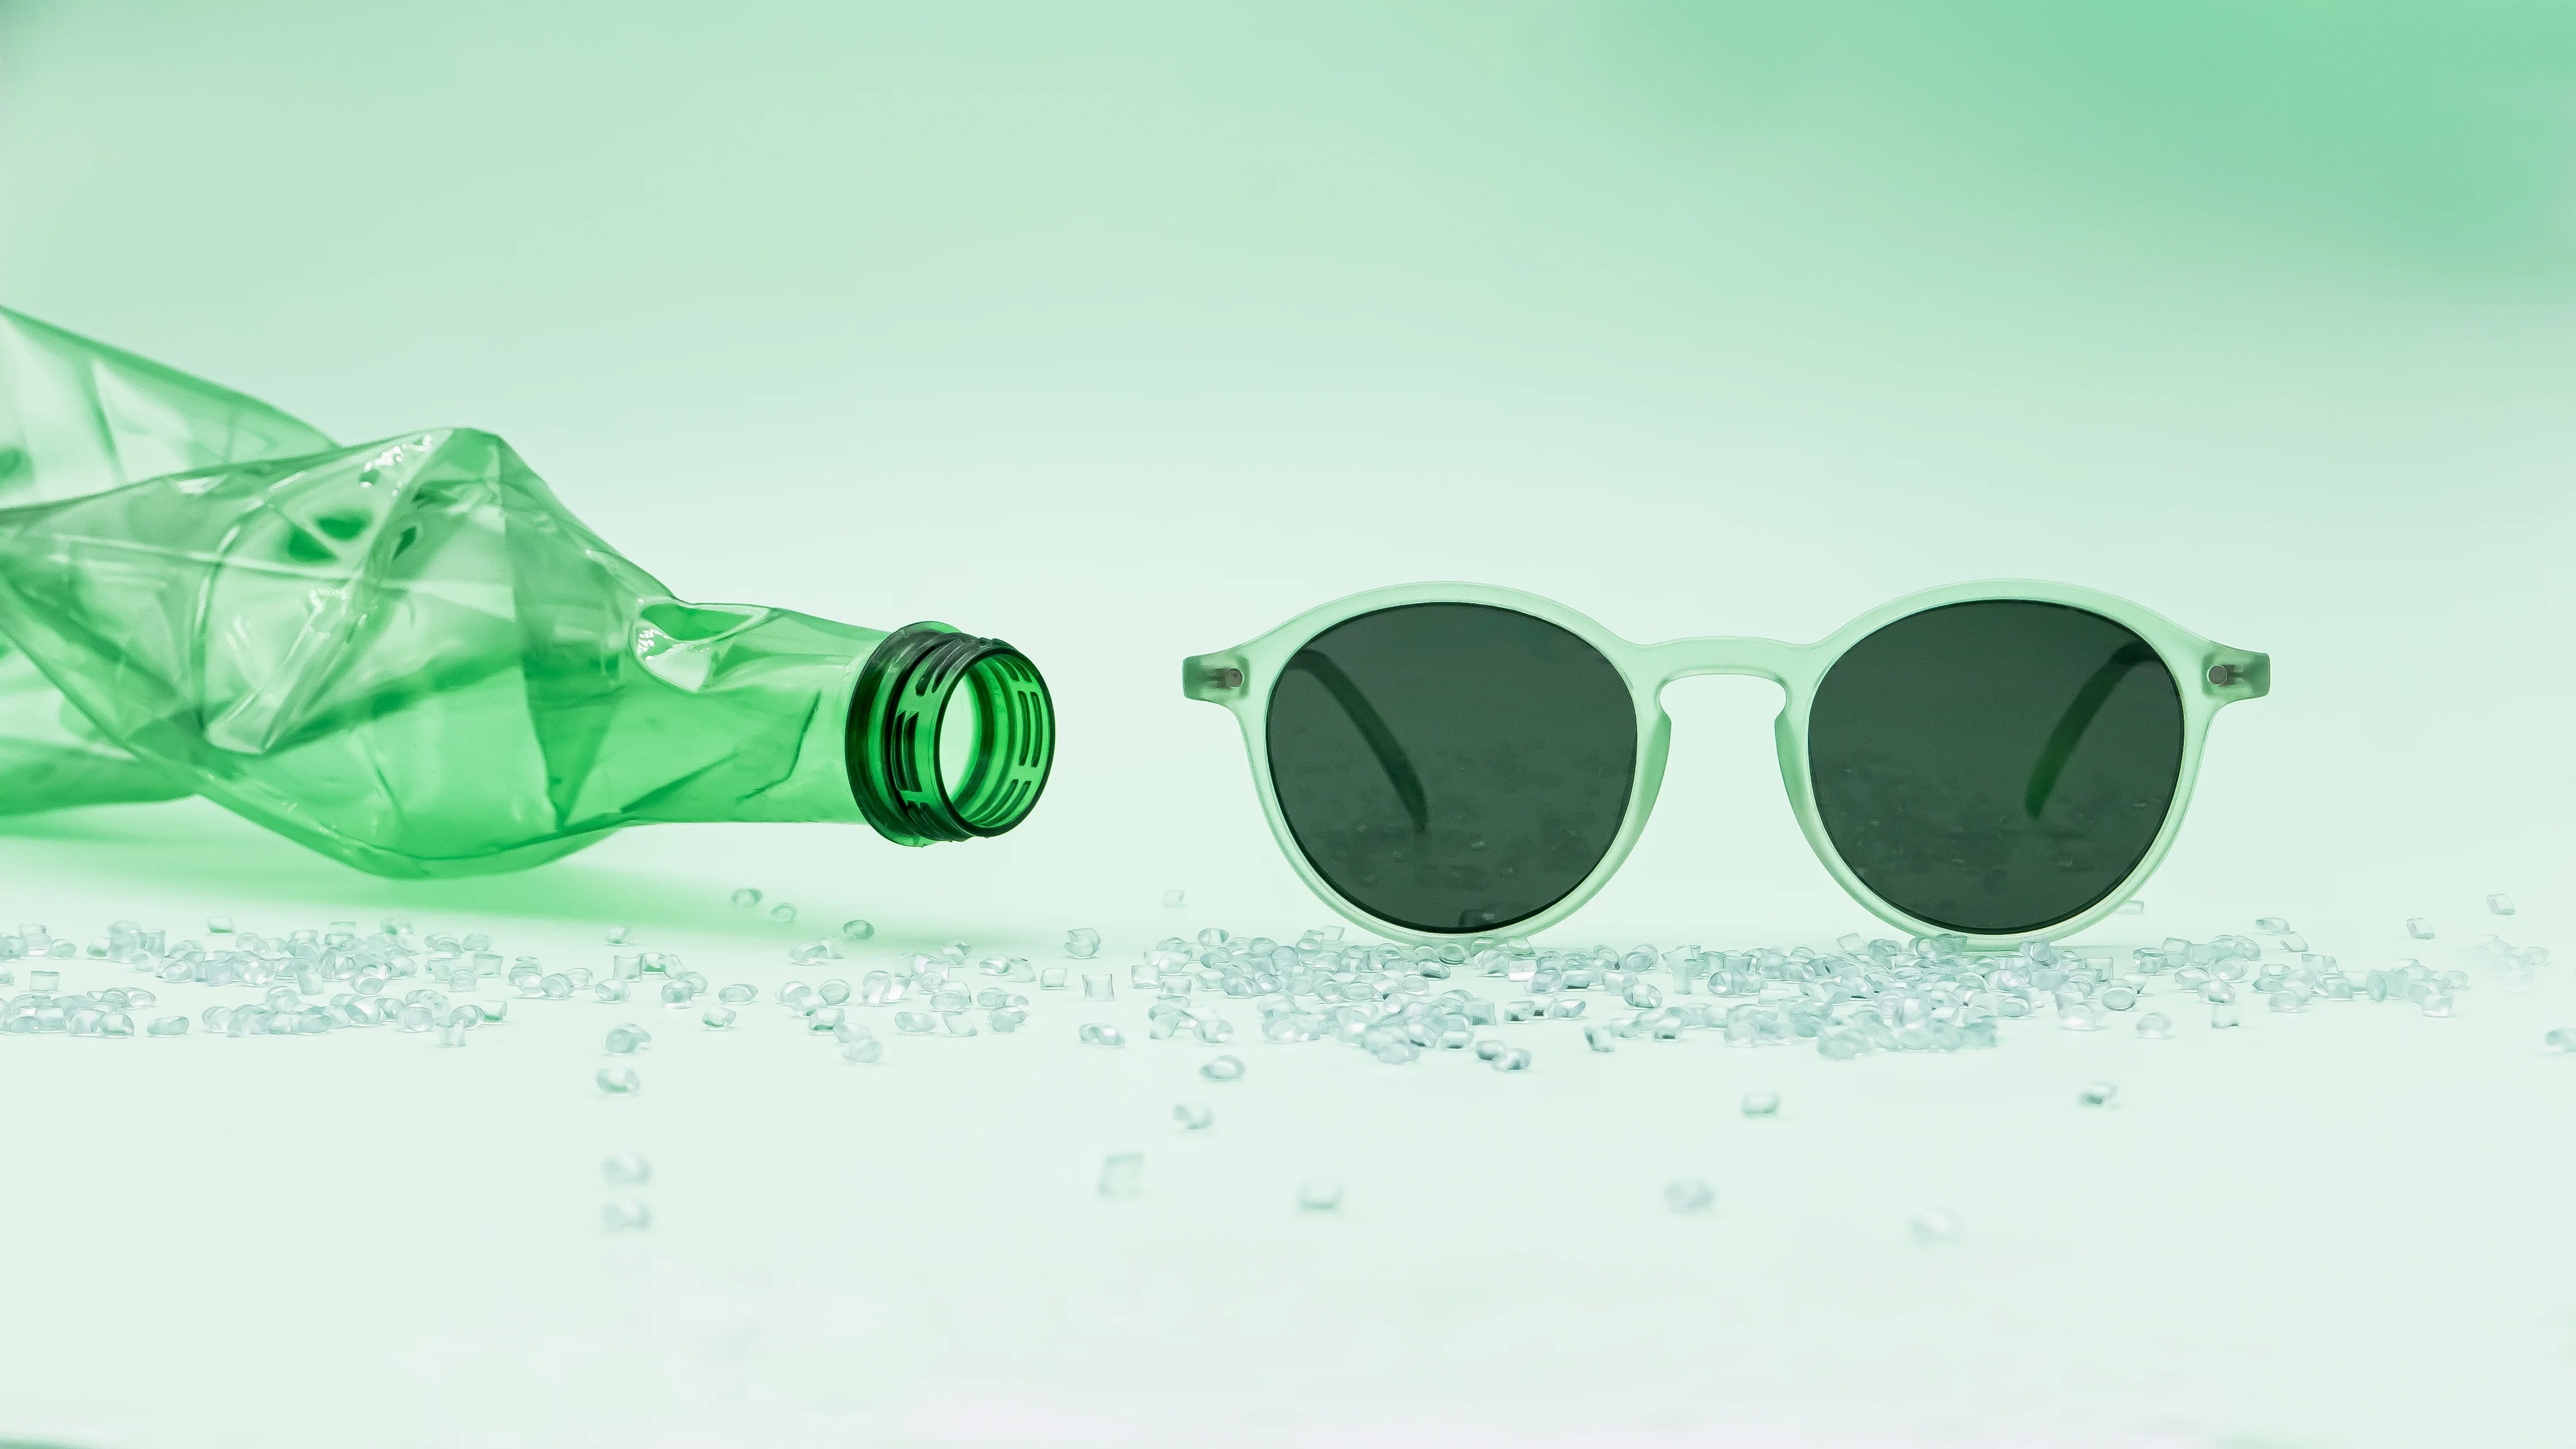 Photographie de la monture Melati couleur Pistache à côté d'une bouteille en plastique transparente verte et de granules de plastique verts. Les granules et la bouteille sont recyclés et utilisés pour créer la monture présente dans la photographie.